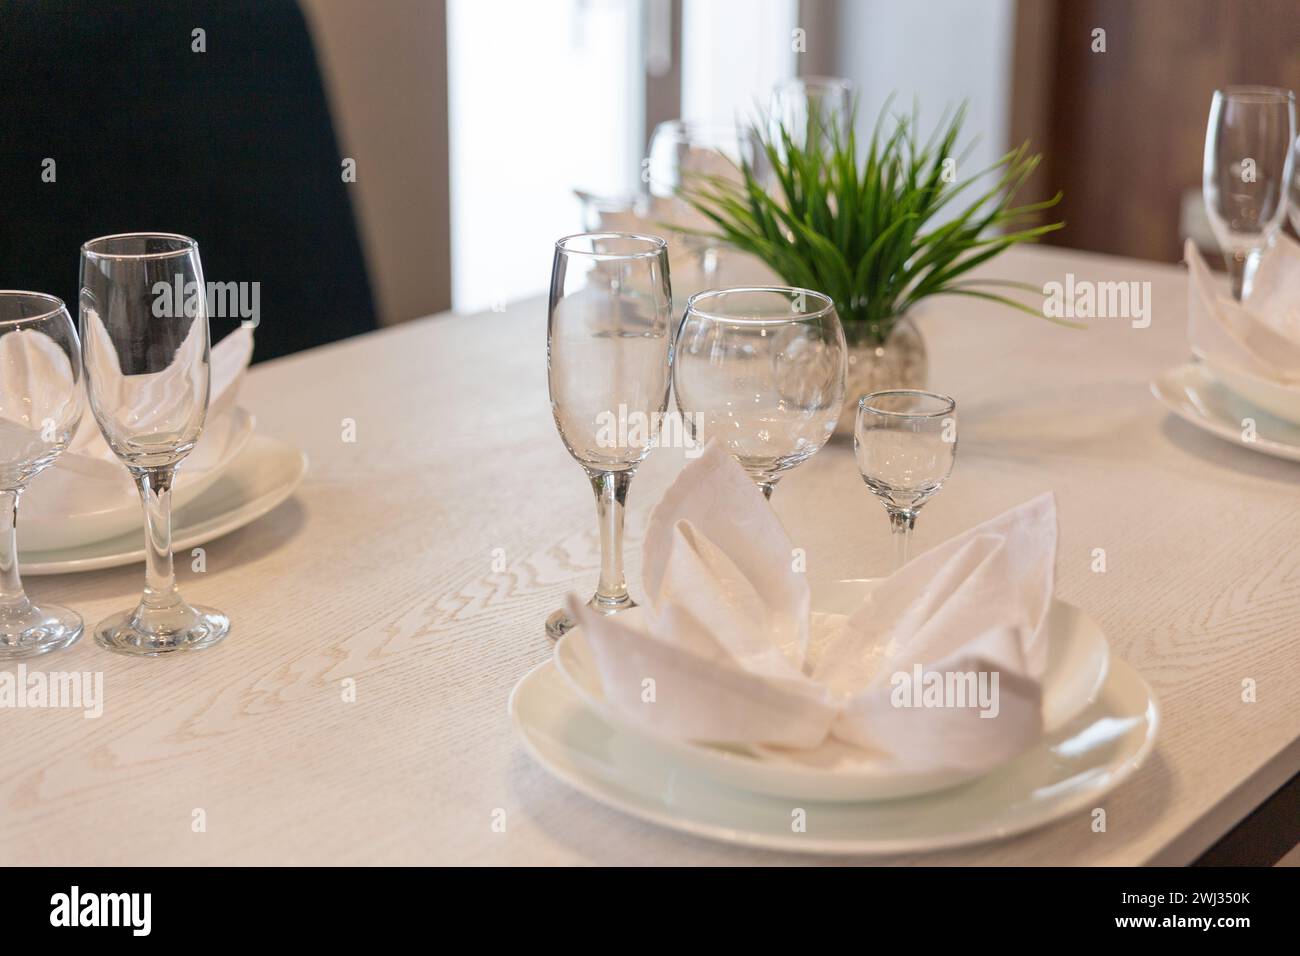 Gläser, Teller, Servietten werden zum Abendessen in einem Restaurant mit gemütlicher Einrichtung serviert. Gläser und Teller auf einem Tisch im Restaurant serviert zum Abendessen. Stockfoto